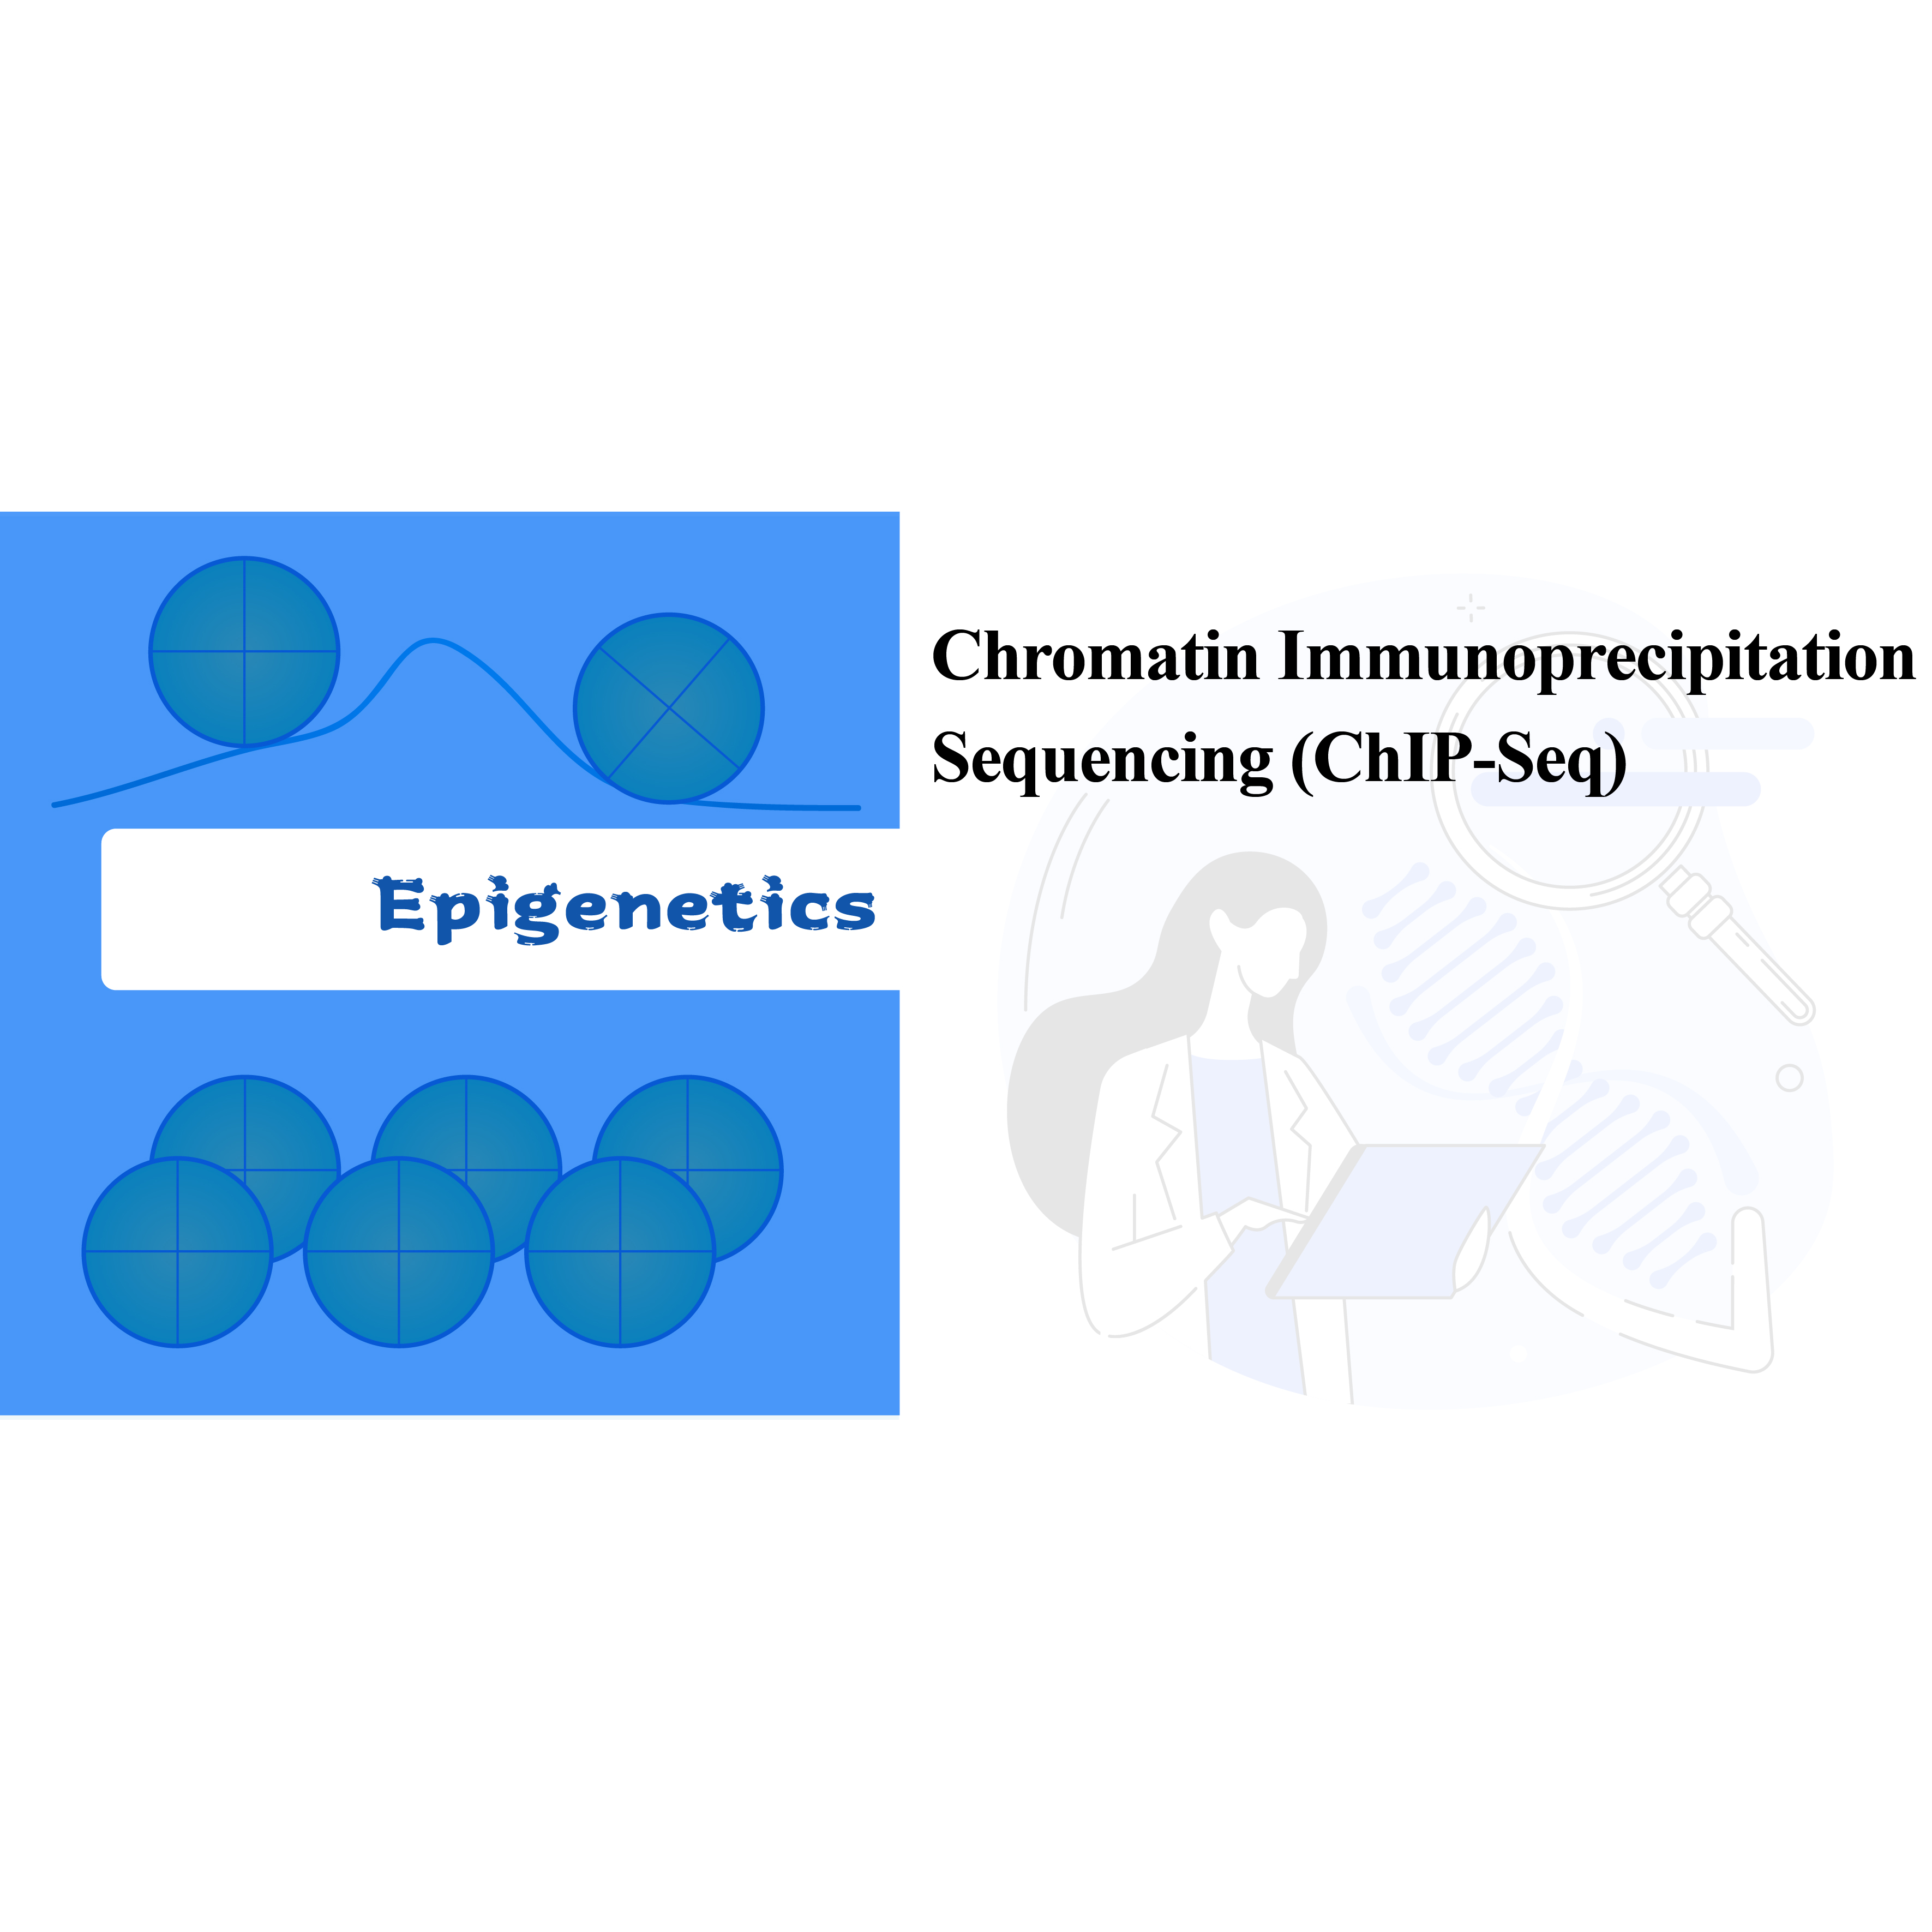 I-Chromatin Immunoprecipitation Sequencing (ChIP-seq)